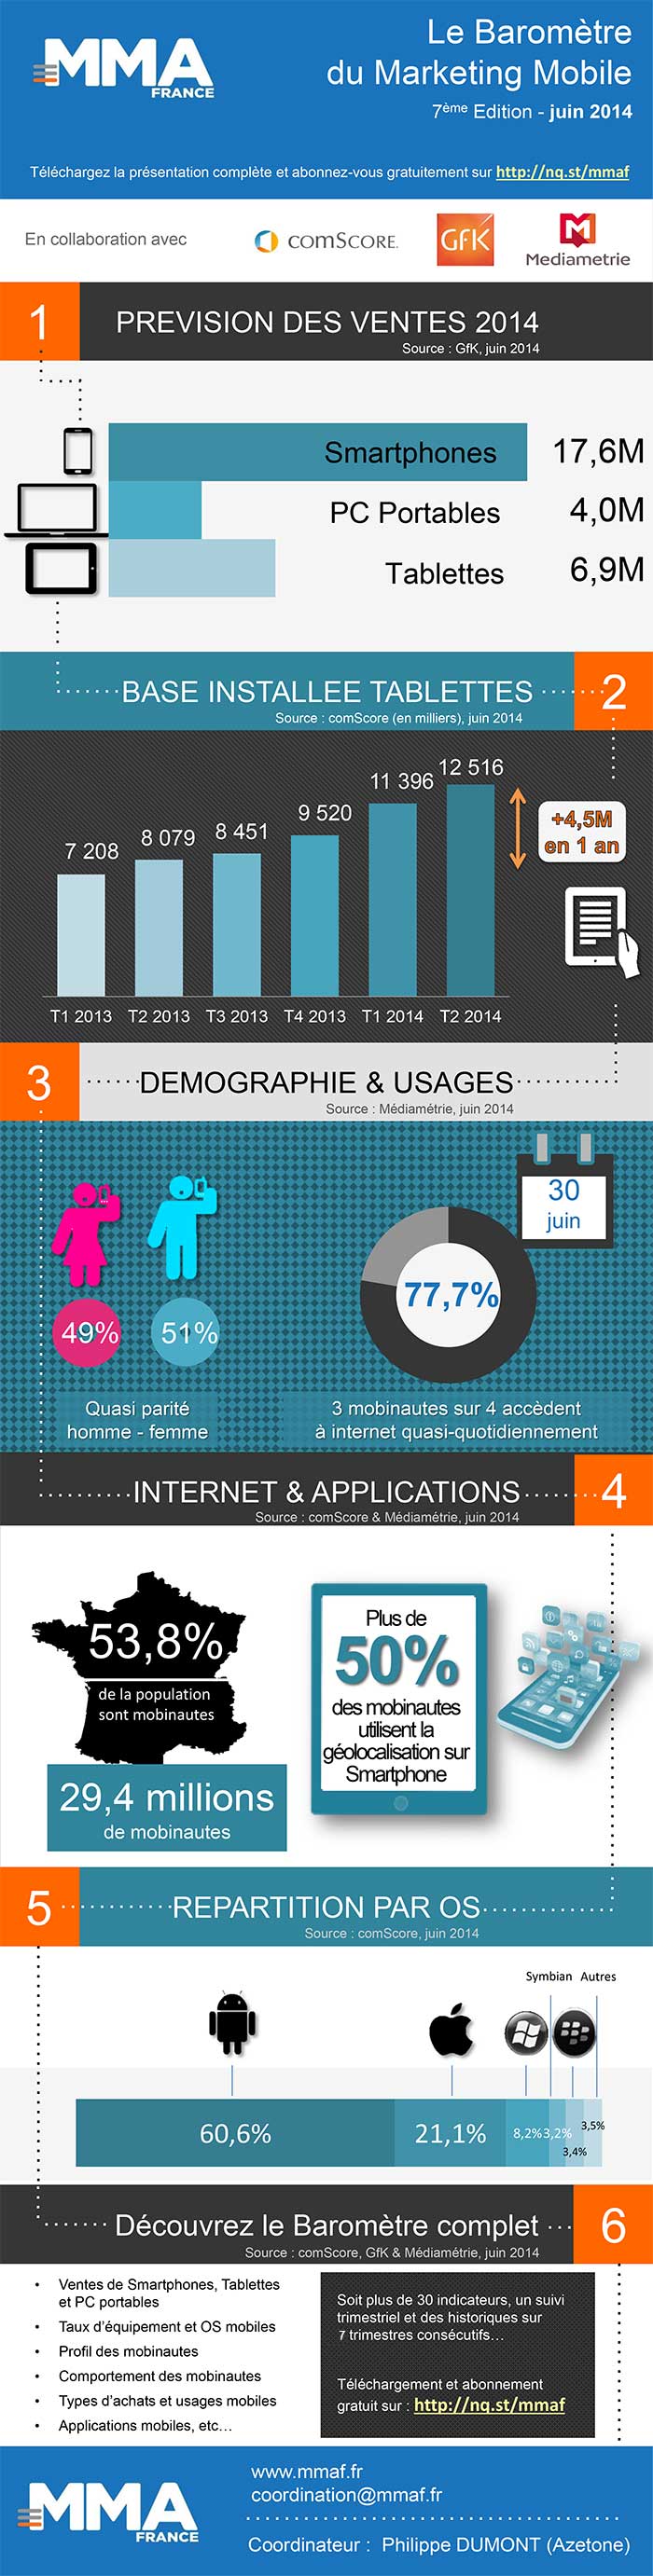 Infographie du septième Baromètre du Marketing Mobile de la MMAF